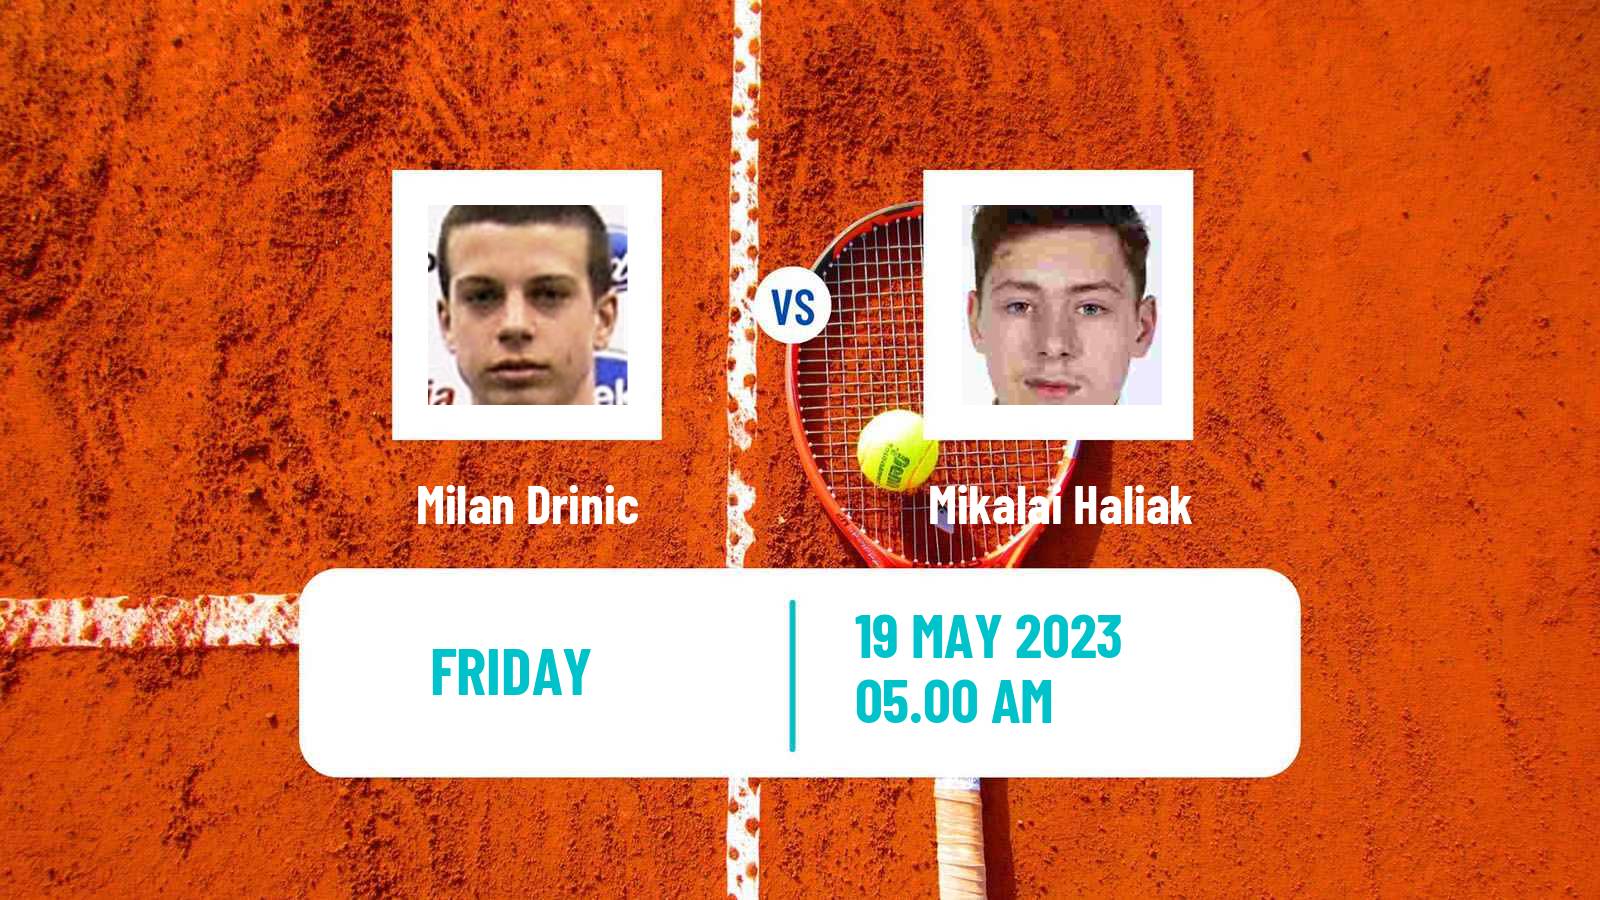 Tennis ITF M25 Kursumlijska Banja 2 Men Milan Drinic - Mikalai Haliak